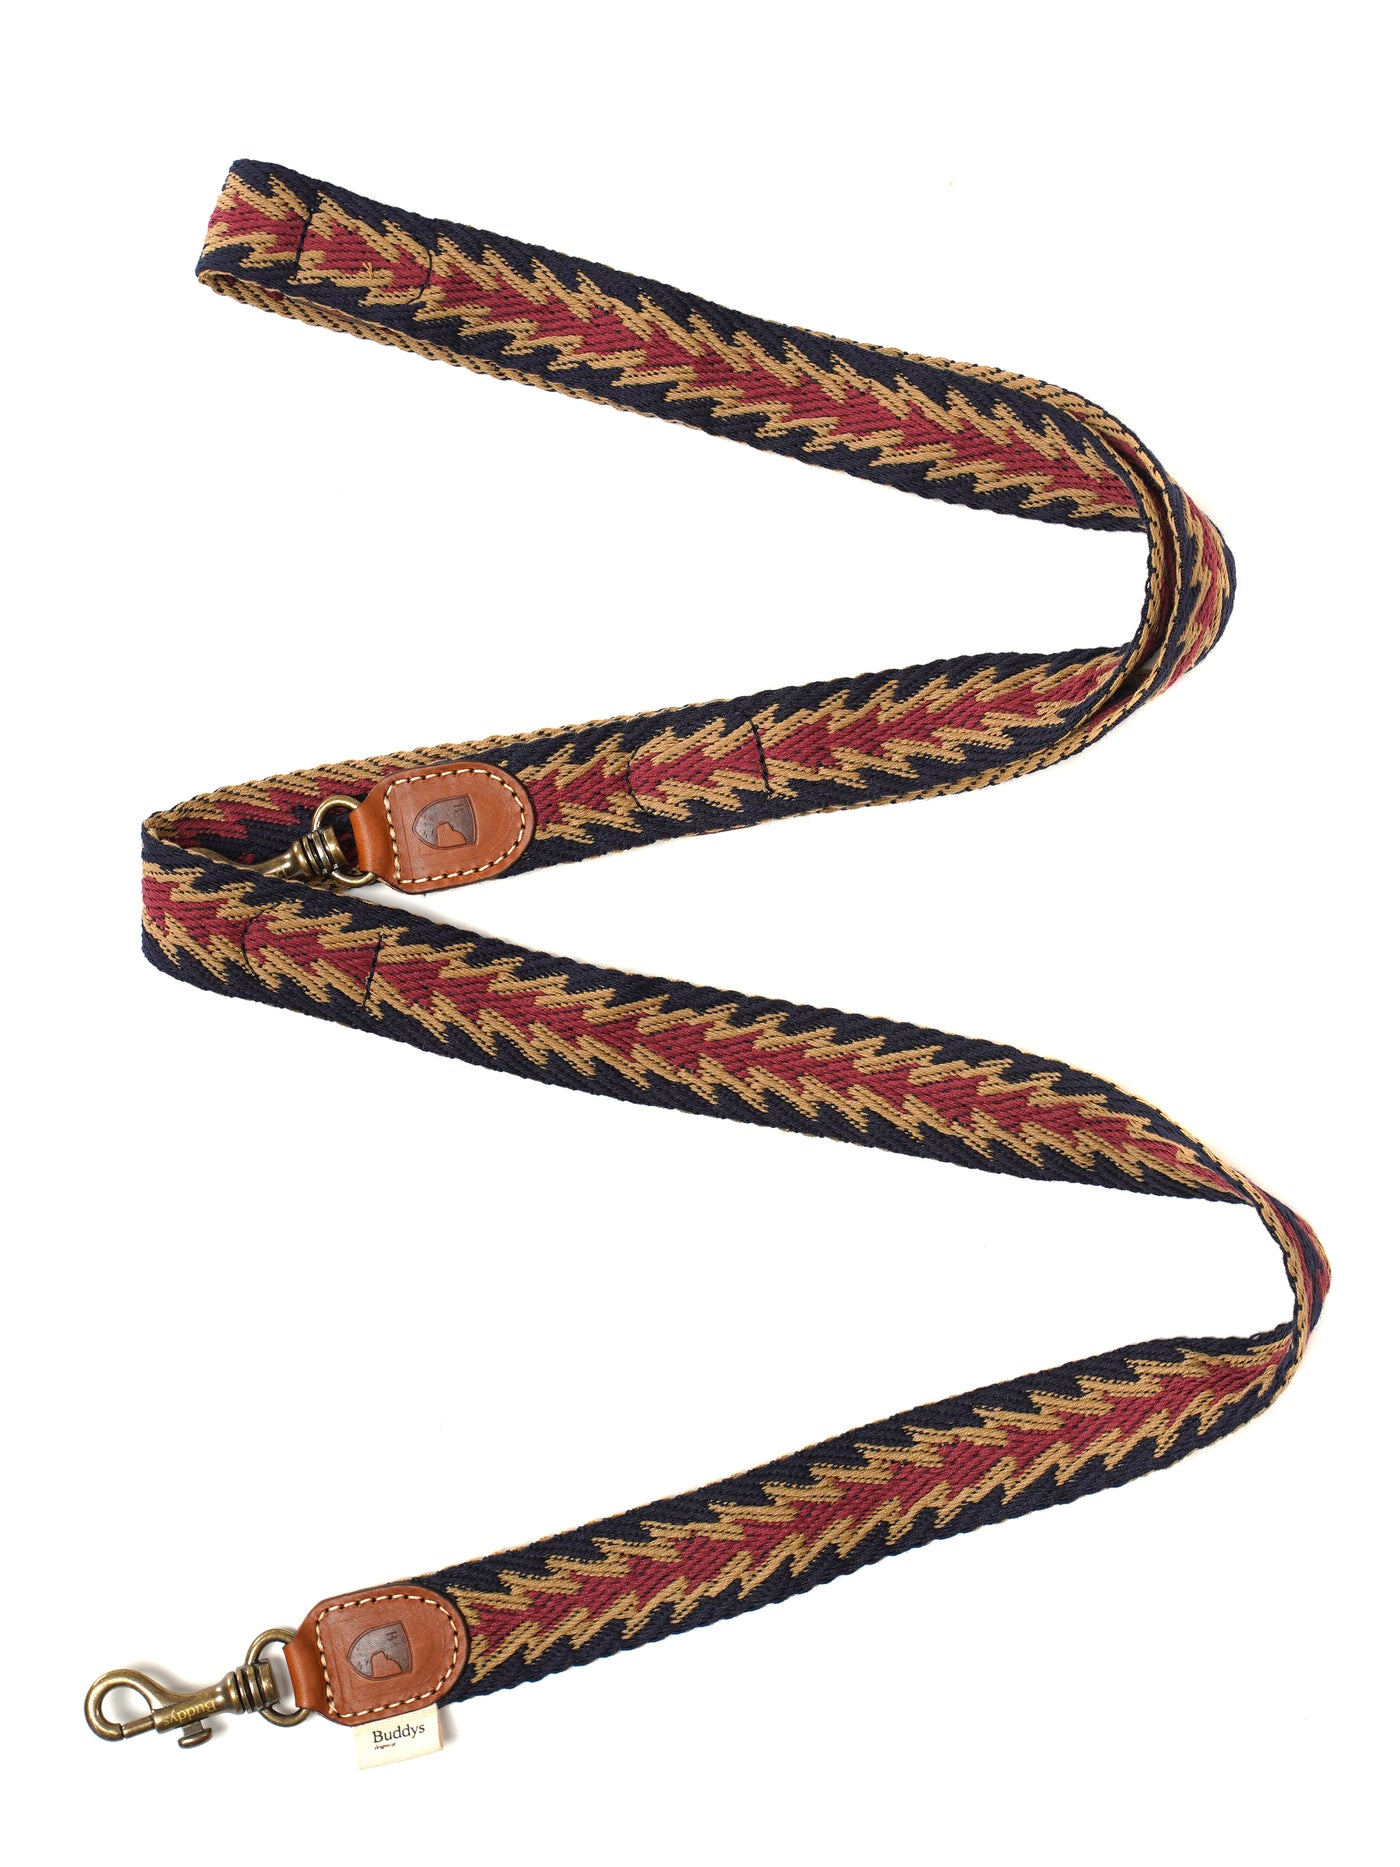 寵物手工編織棉拖帶 -  秘魯系列 箭頭花紋